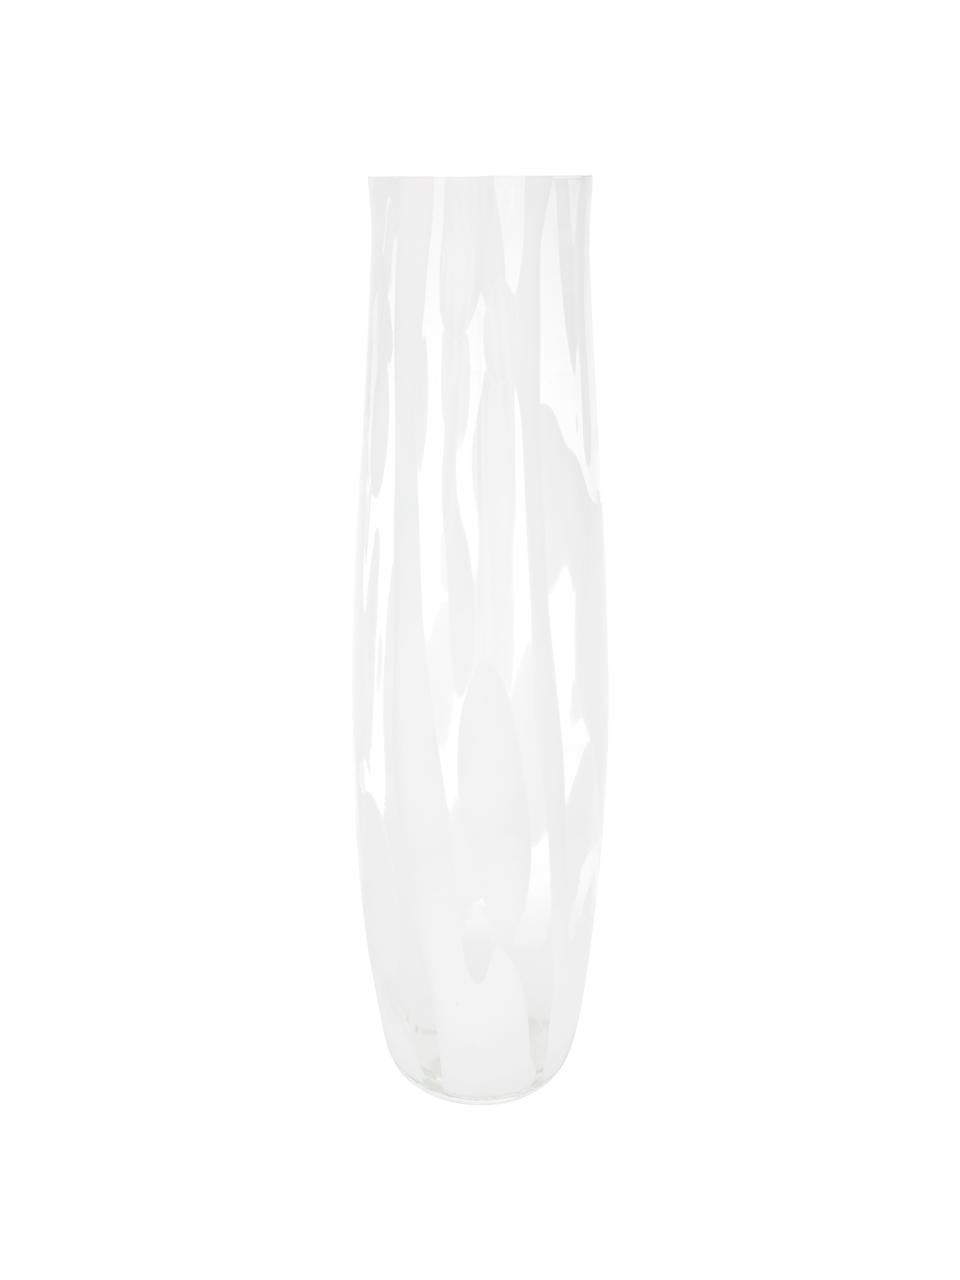 Velká váza Decorate, Sklo, Transparentní, bílá, Ø 16 cm, V 55 cm